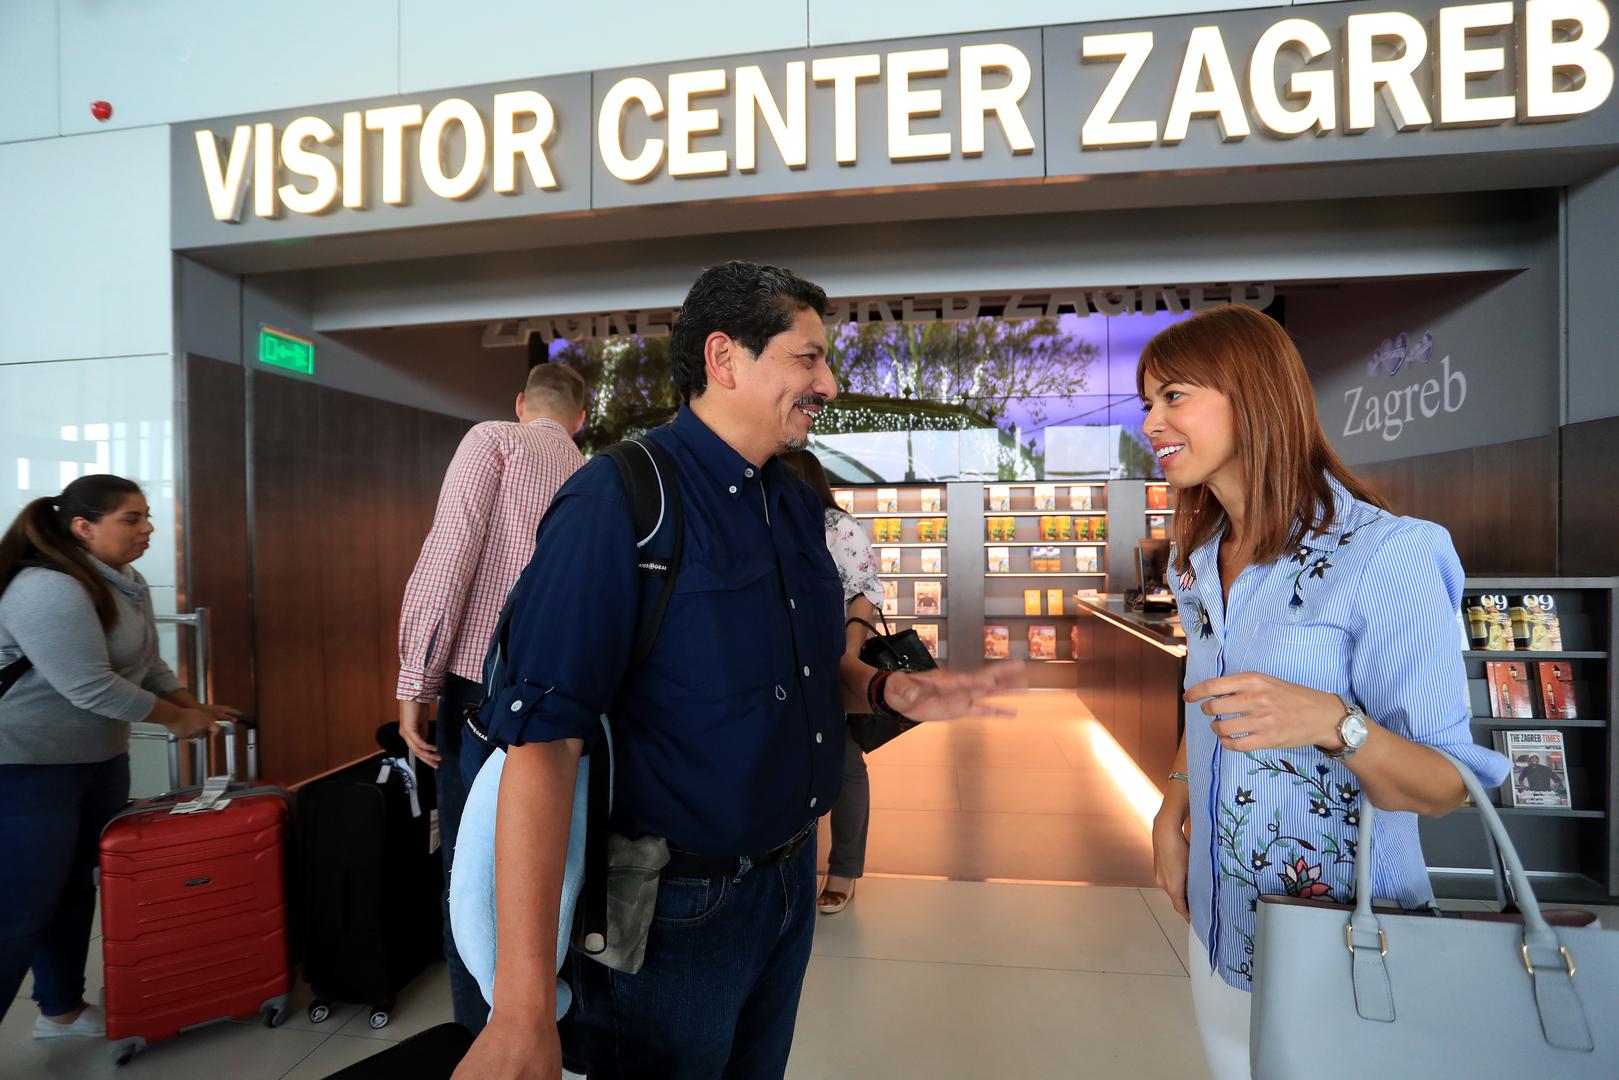 Na poziv Hrvatske turističke zajednice u posjet našoj zemlji stigao je Yuri Cortez, fotoreporter AFP-a.

